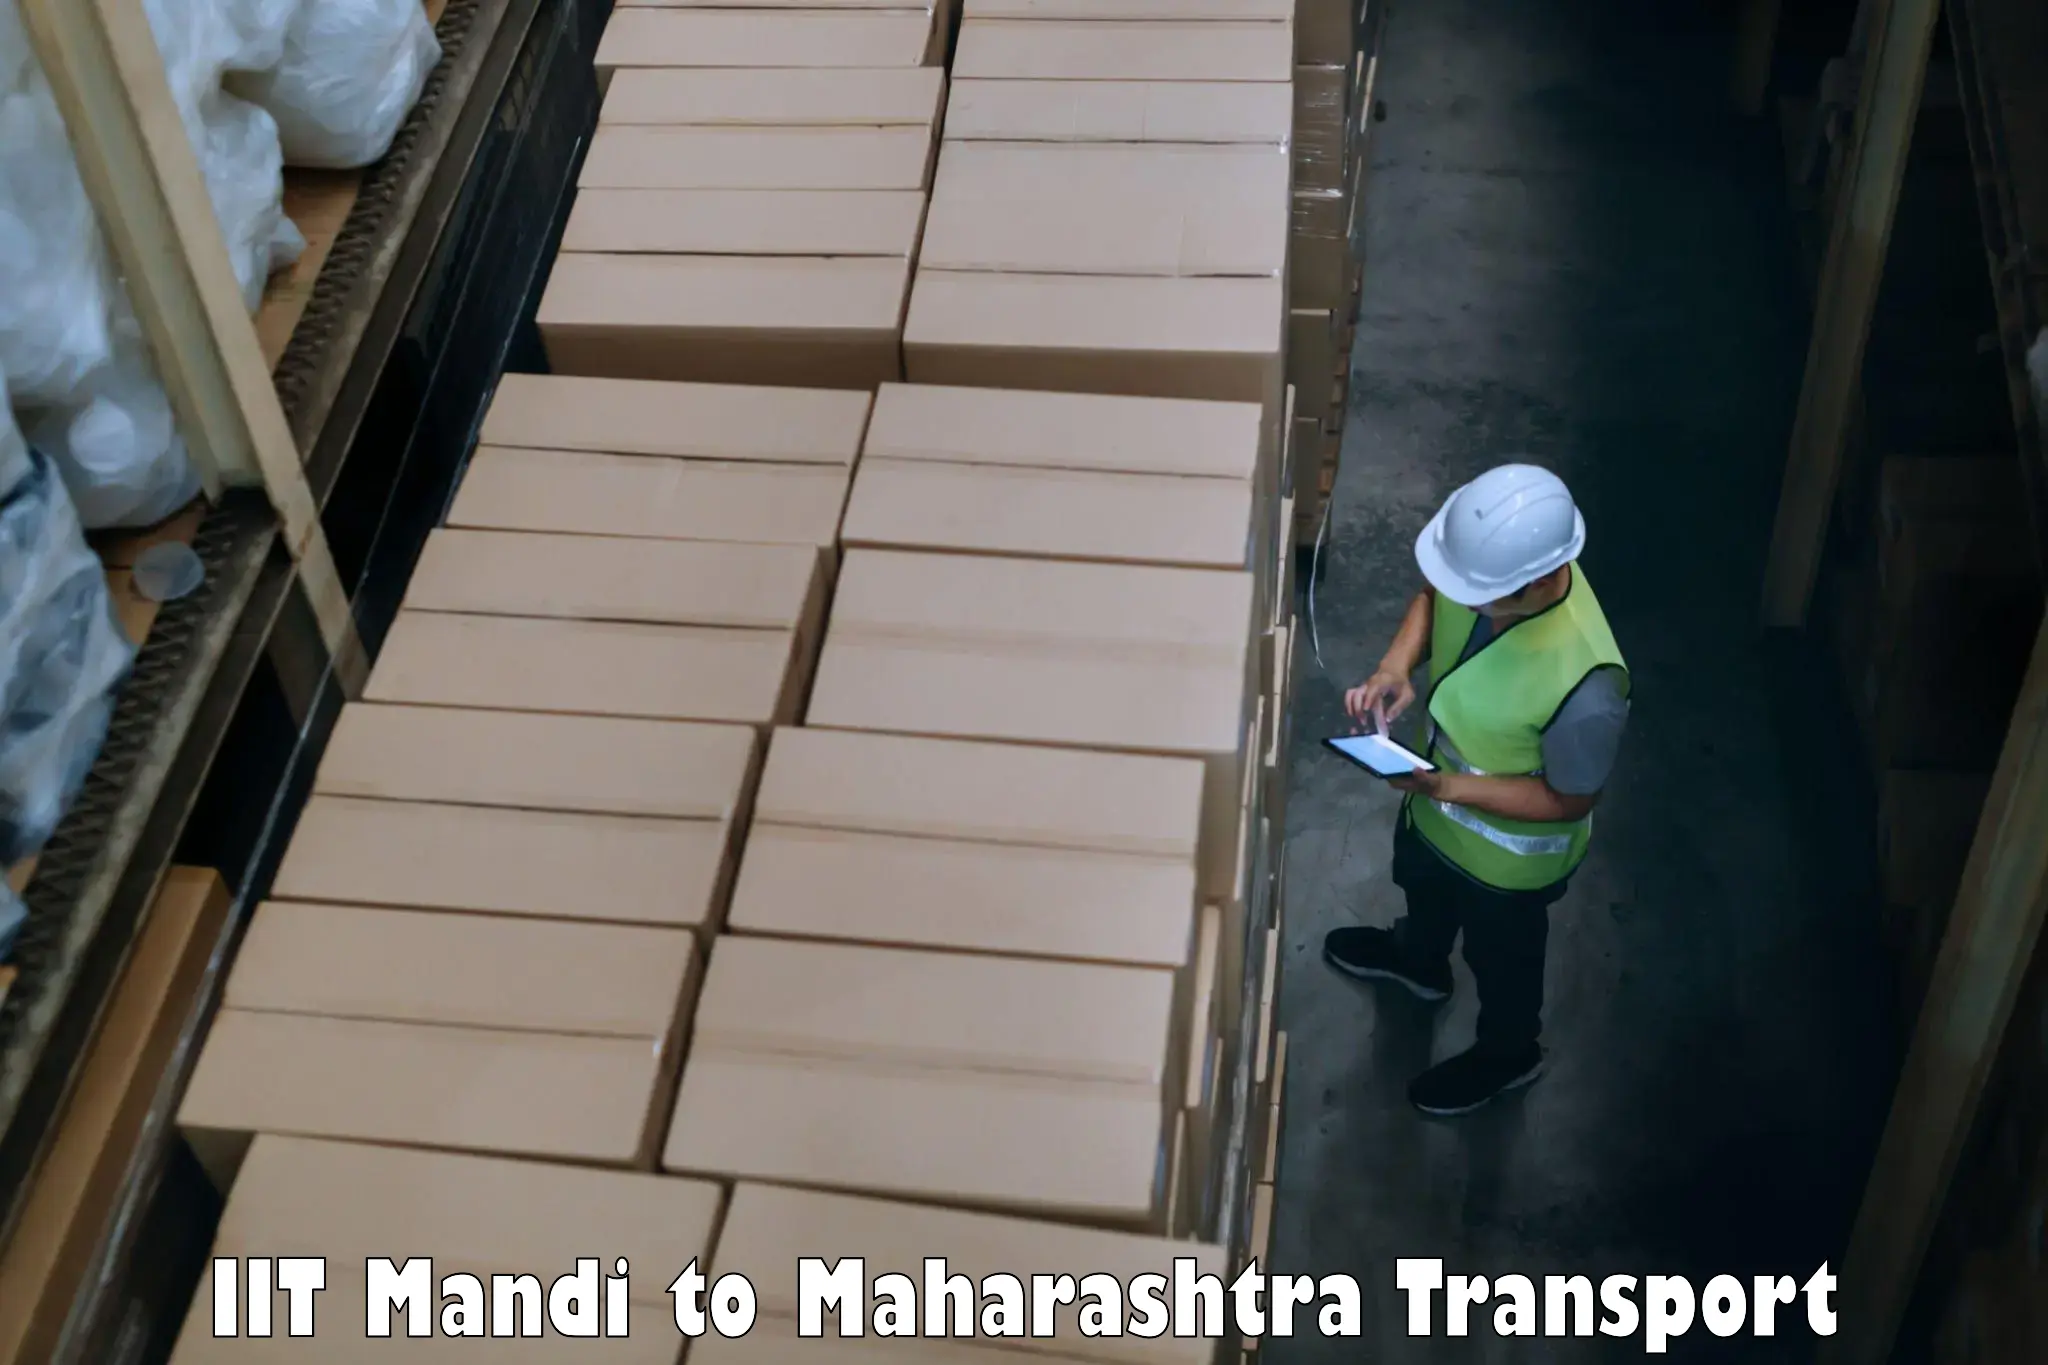 Online transport service IIT Mandi to Waranga Phata